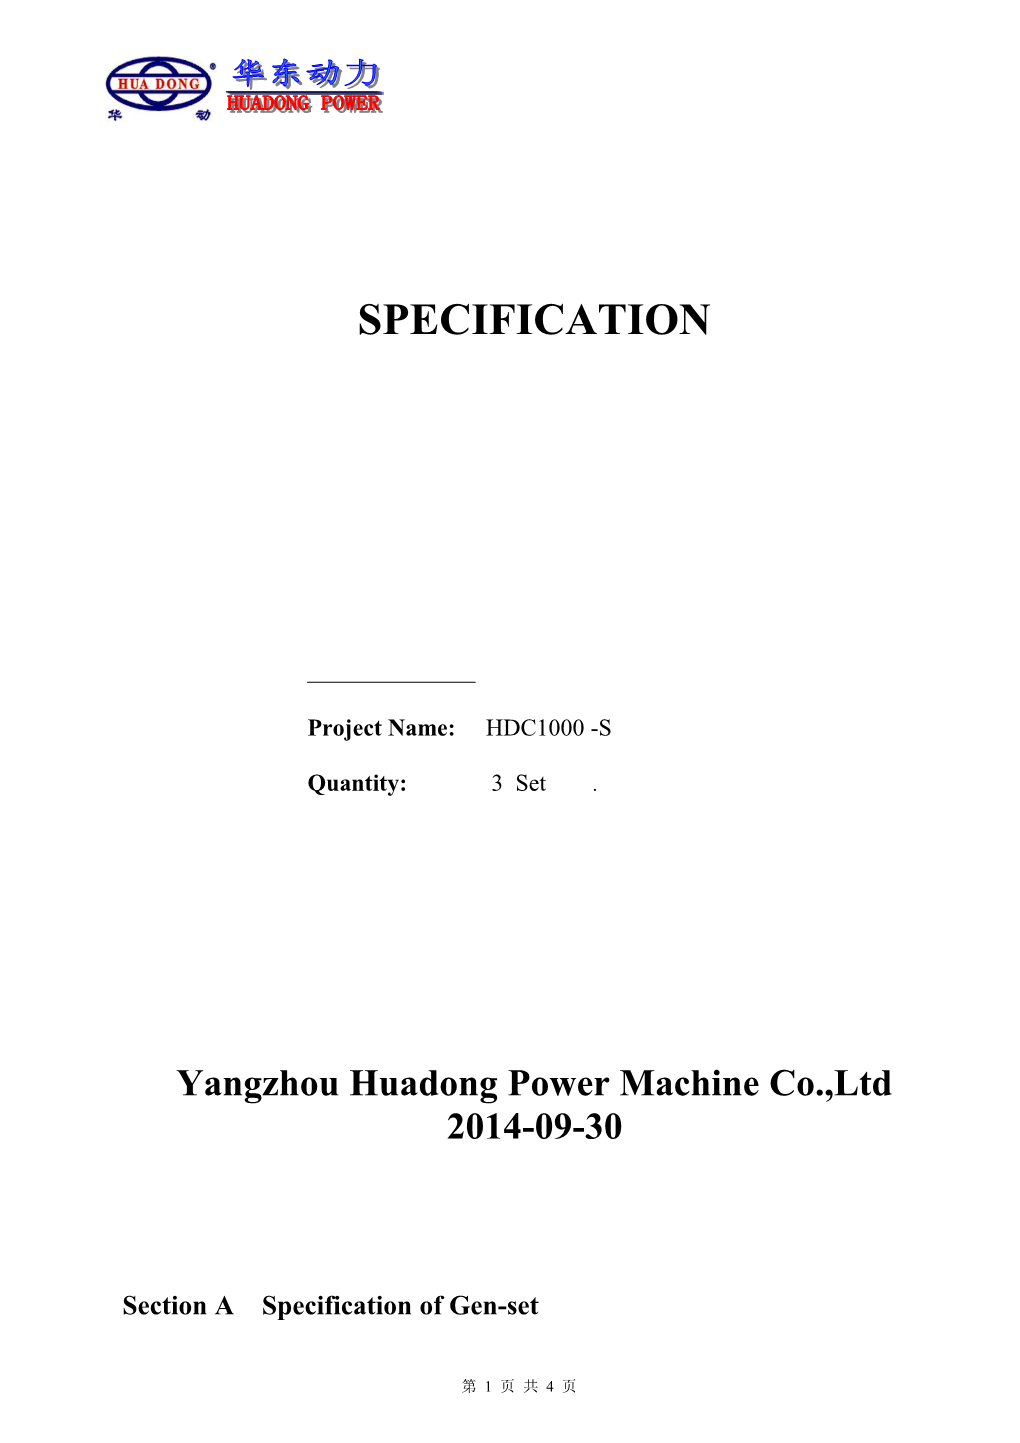 Yangzhou Huadong Power Machine Co.,Ltd